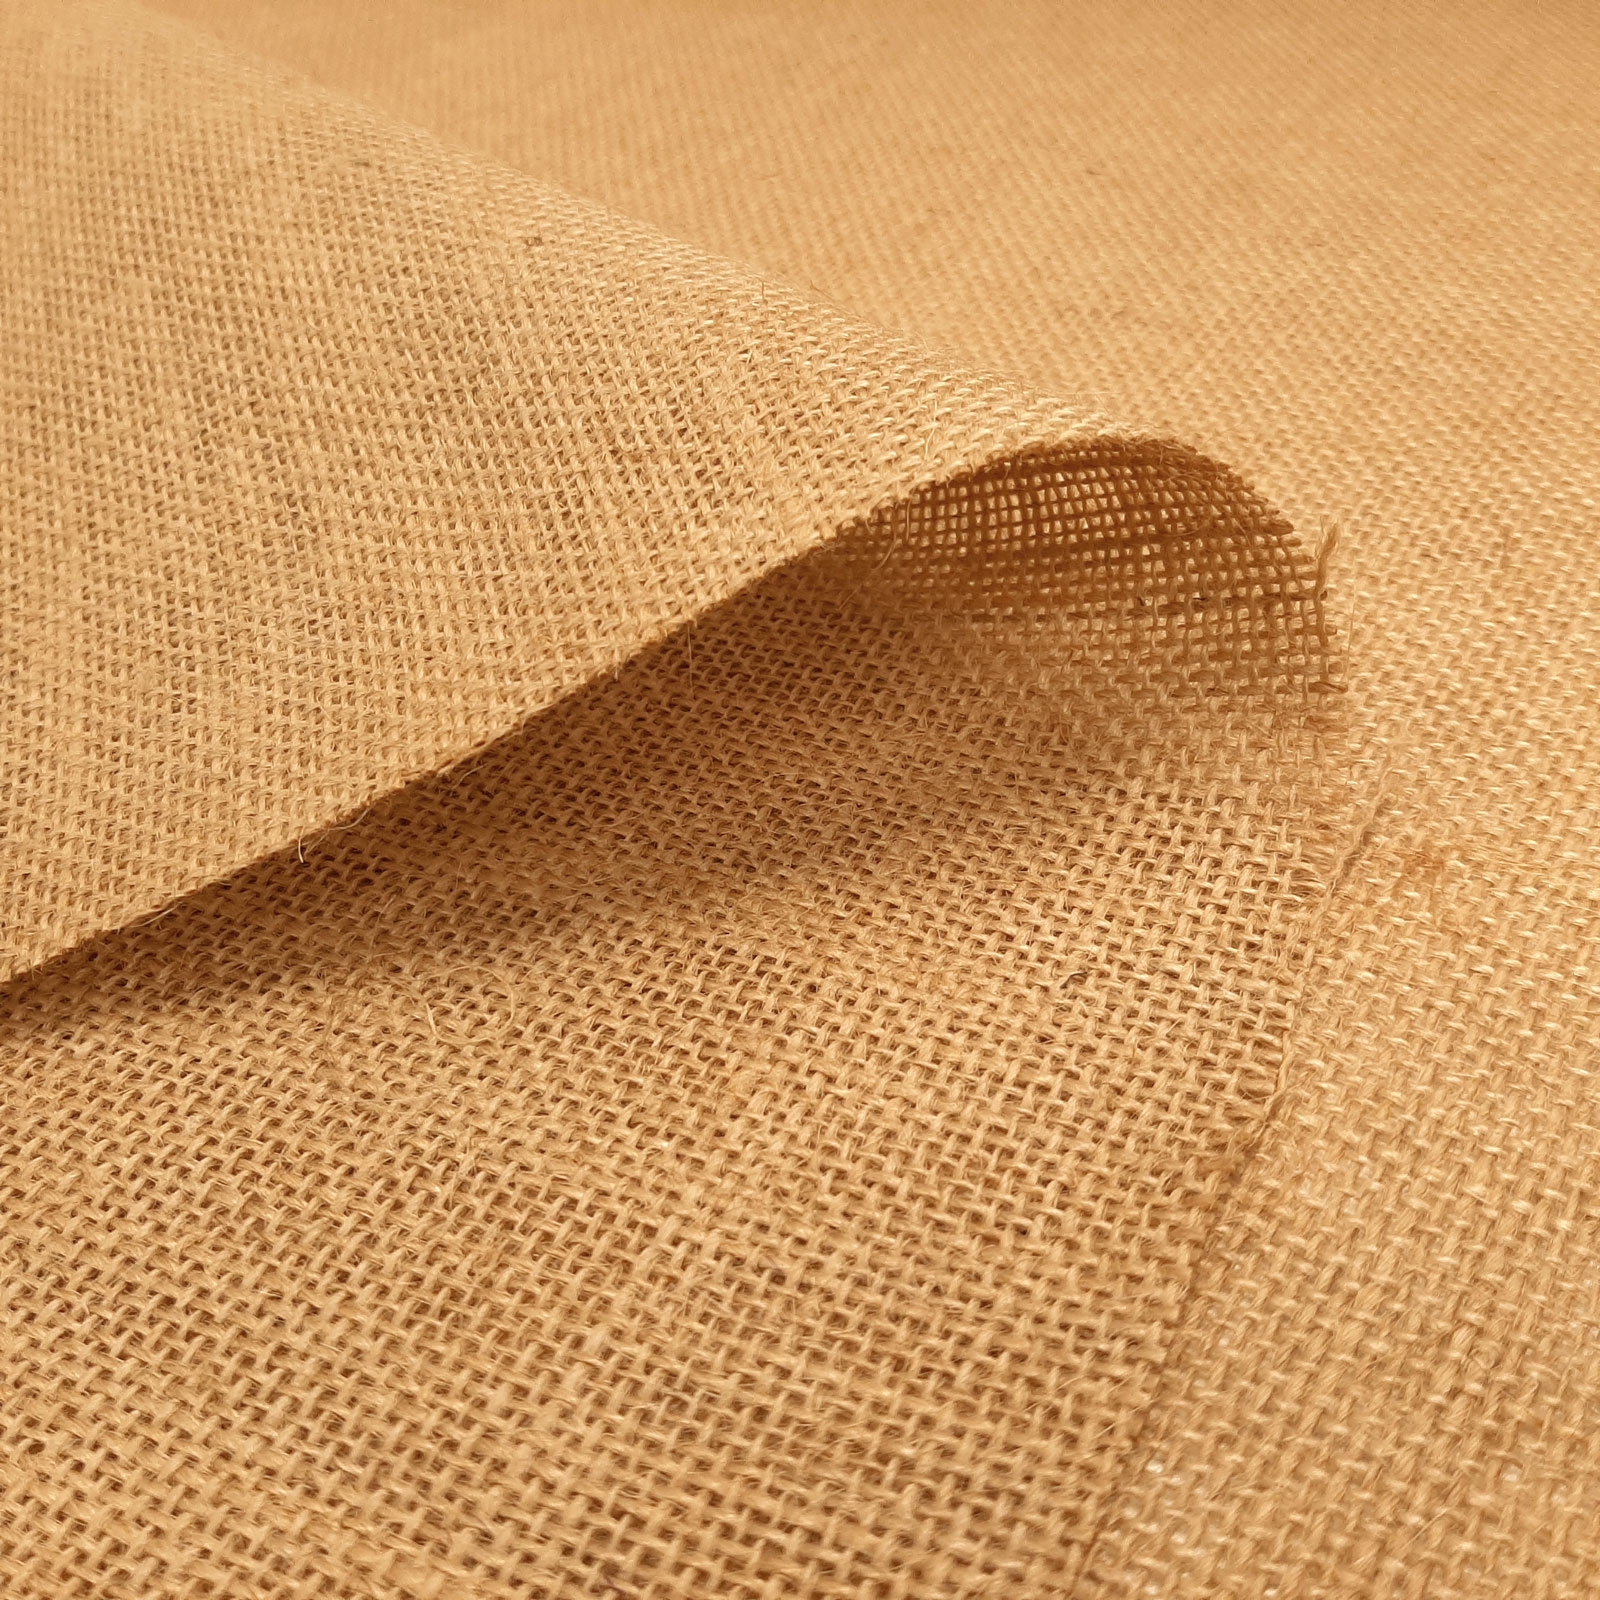 Joris - Tissu décoratif en jute / jute naturel - largeur : 130cm